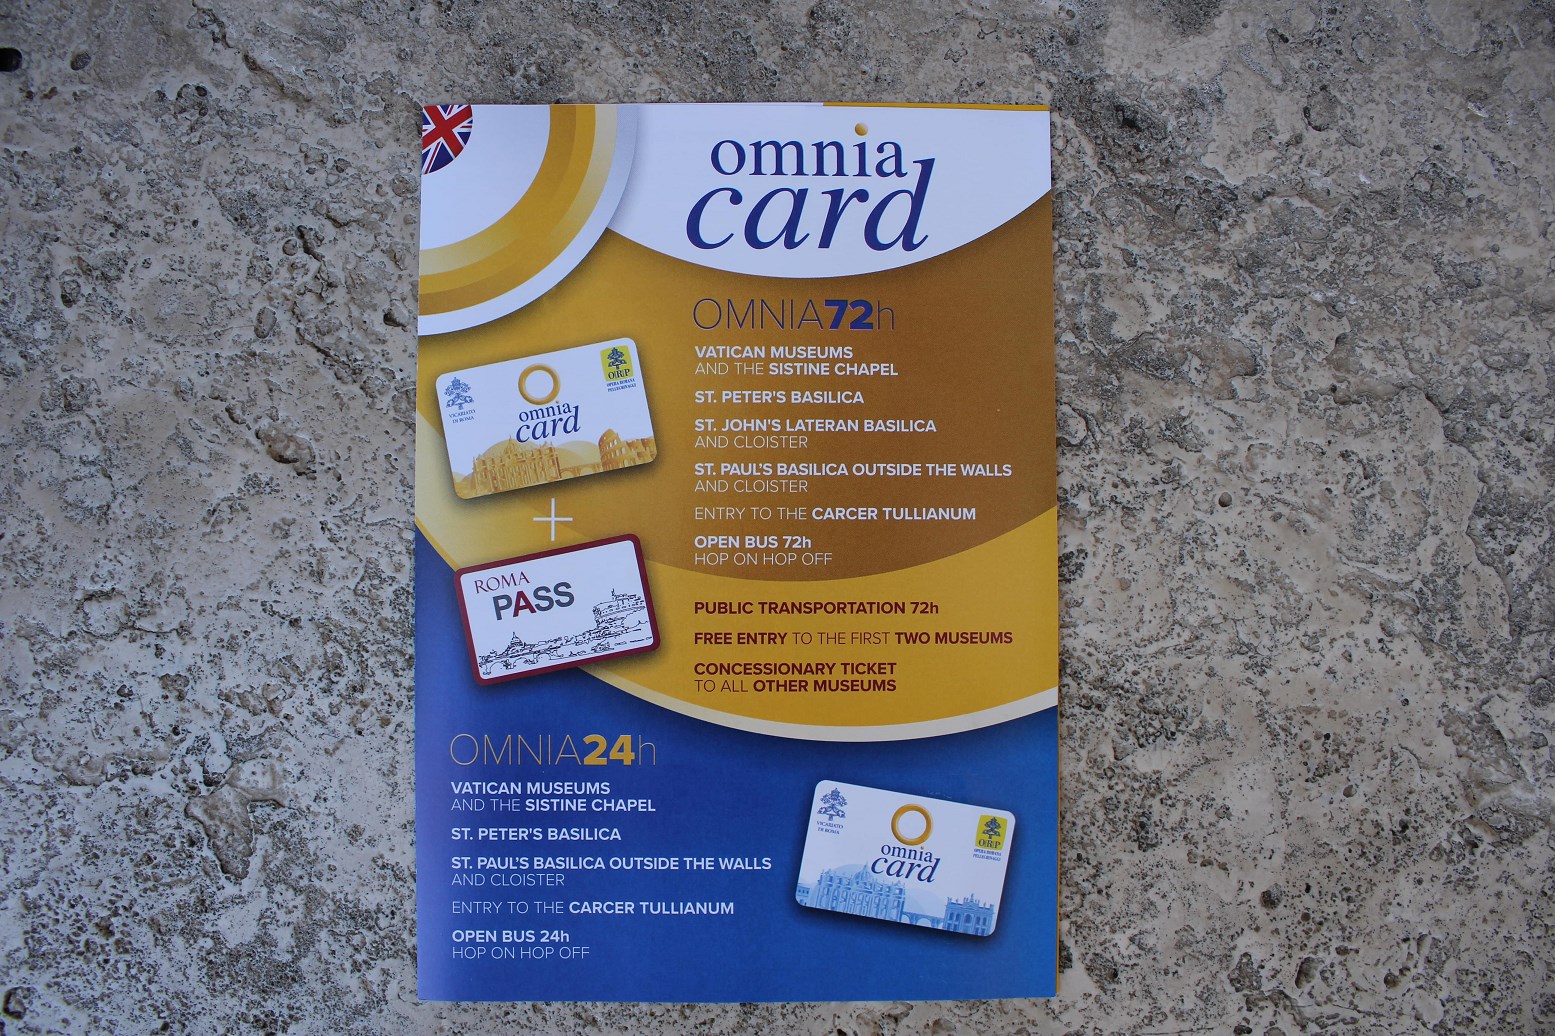 castel gandolfo tickets omnia card